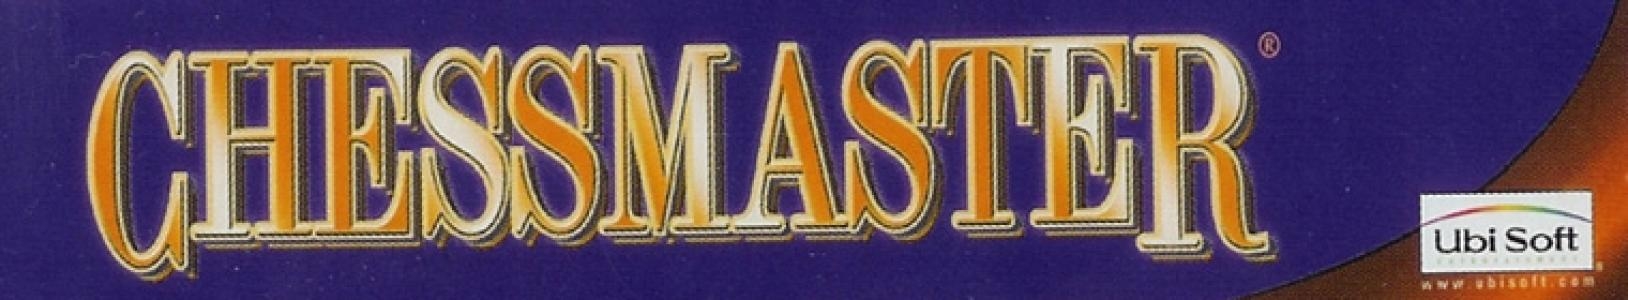 Chessmaster banner